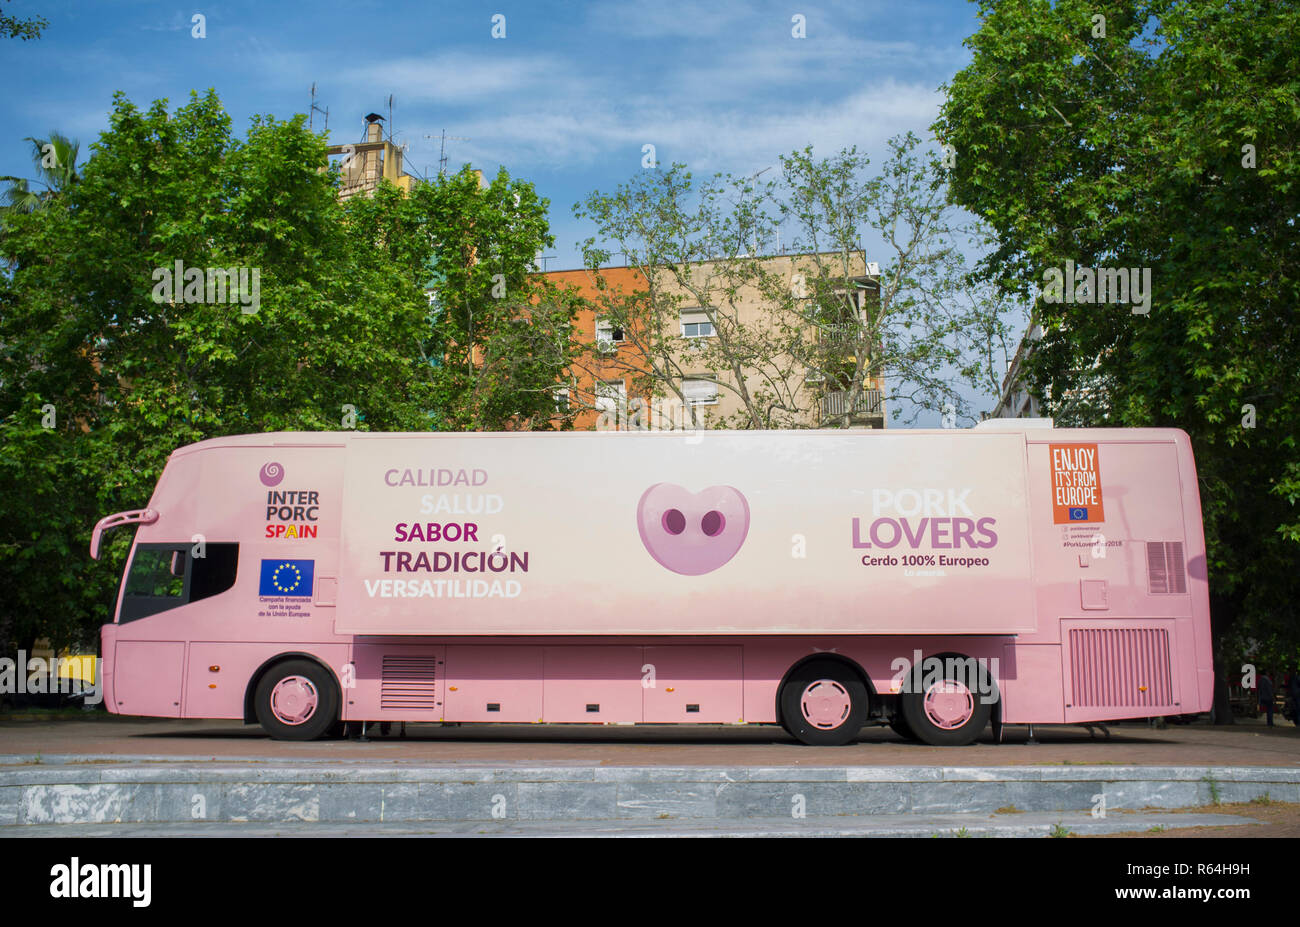 Badajoz, Spagna - Maggio 23th, 2018: gli amanti della carne di maiale Tour Bus parcheggiato nella città. Interporc organizzazione campagna multimediale Foto Stock